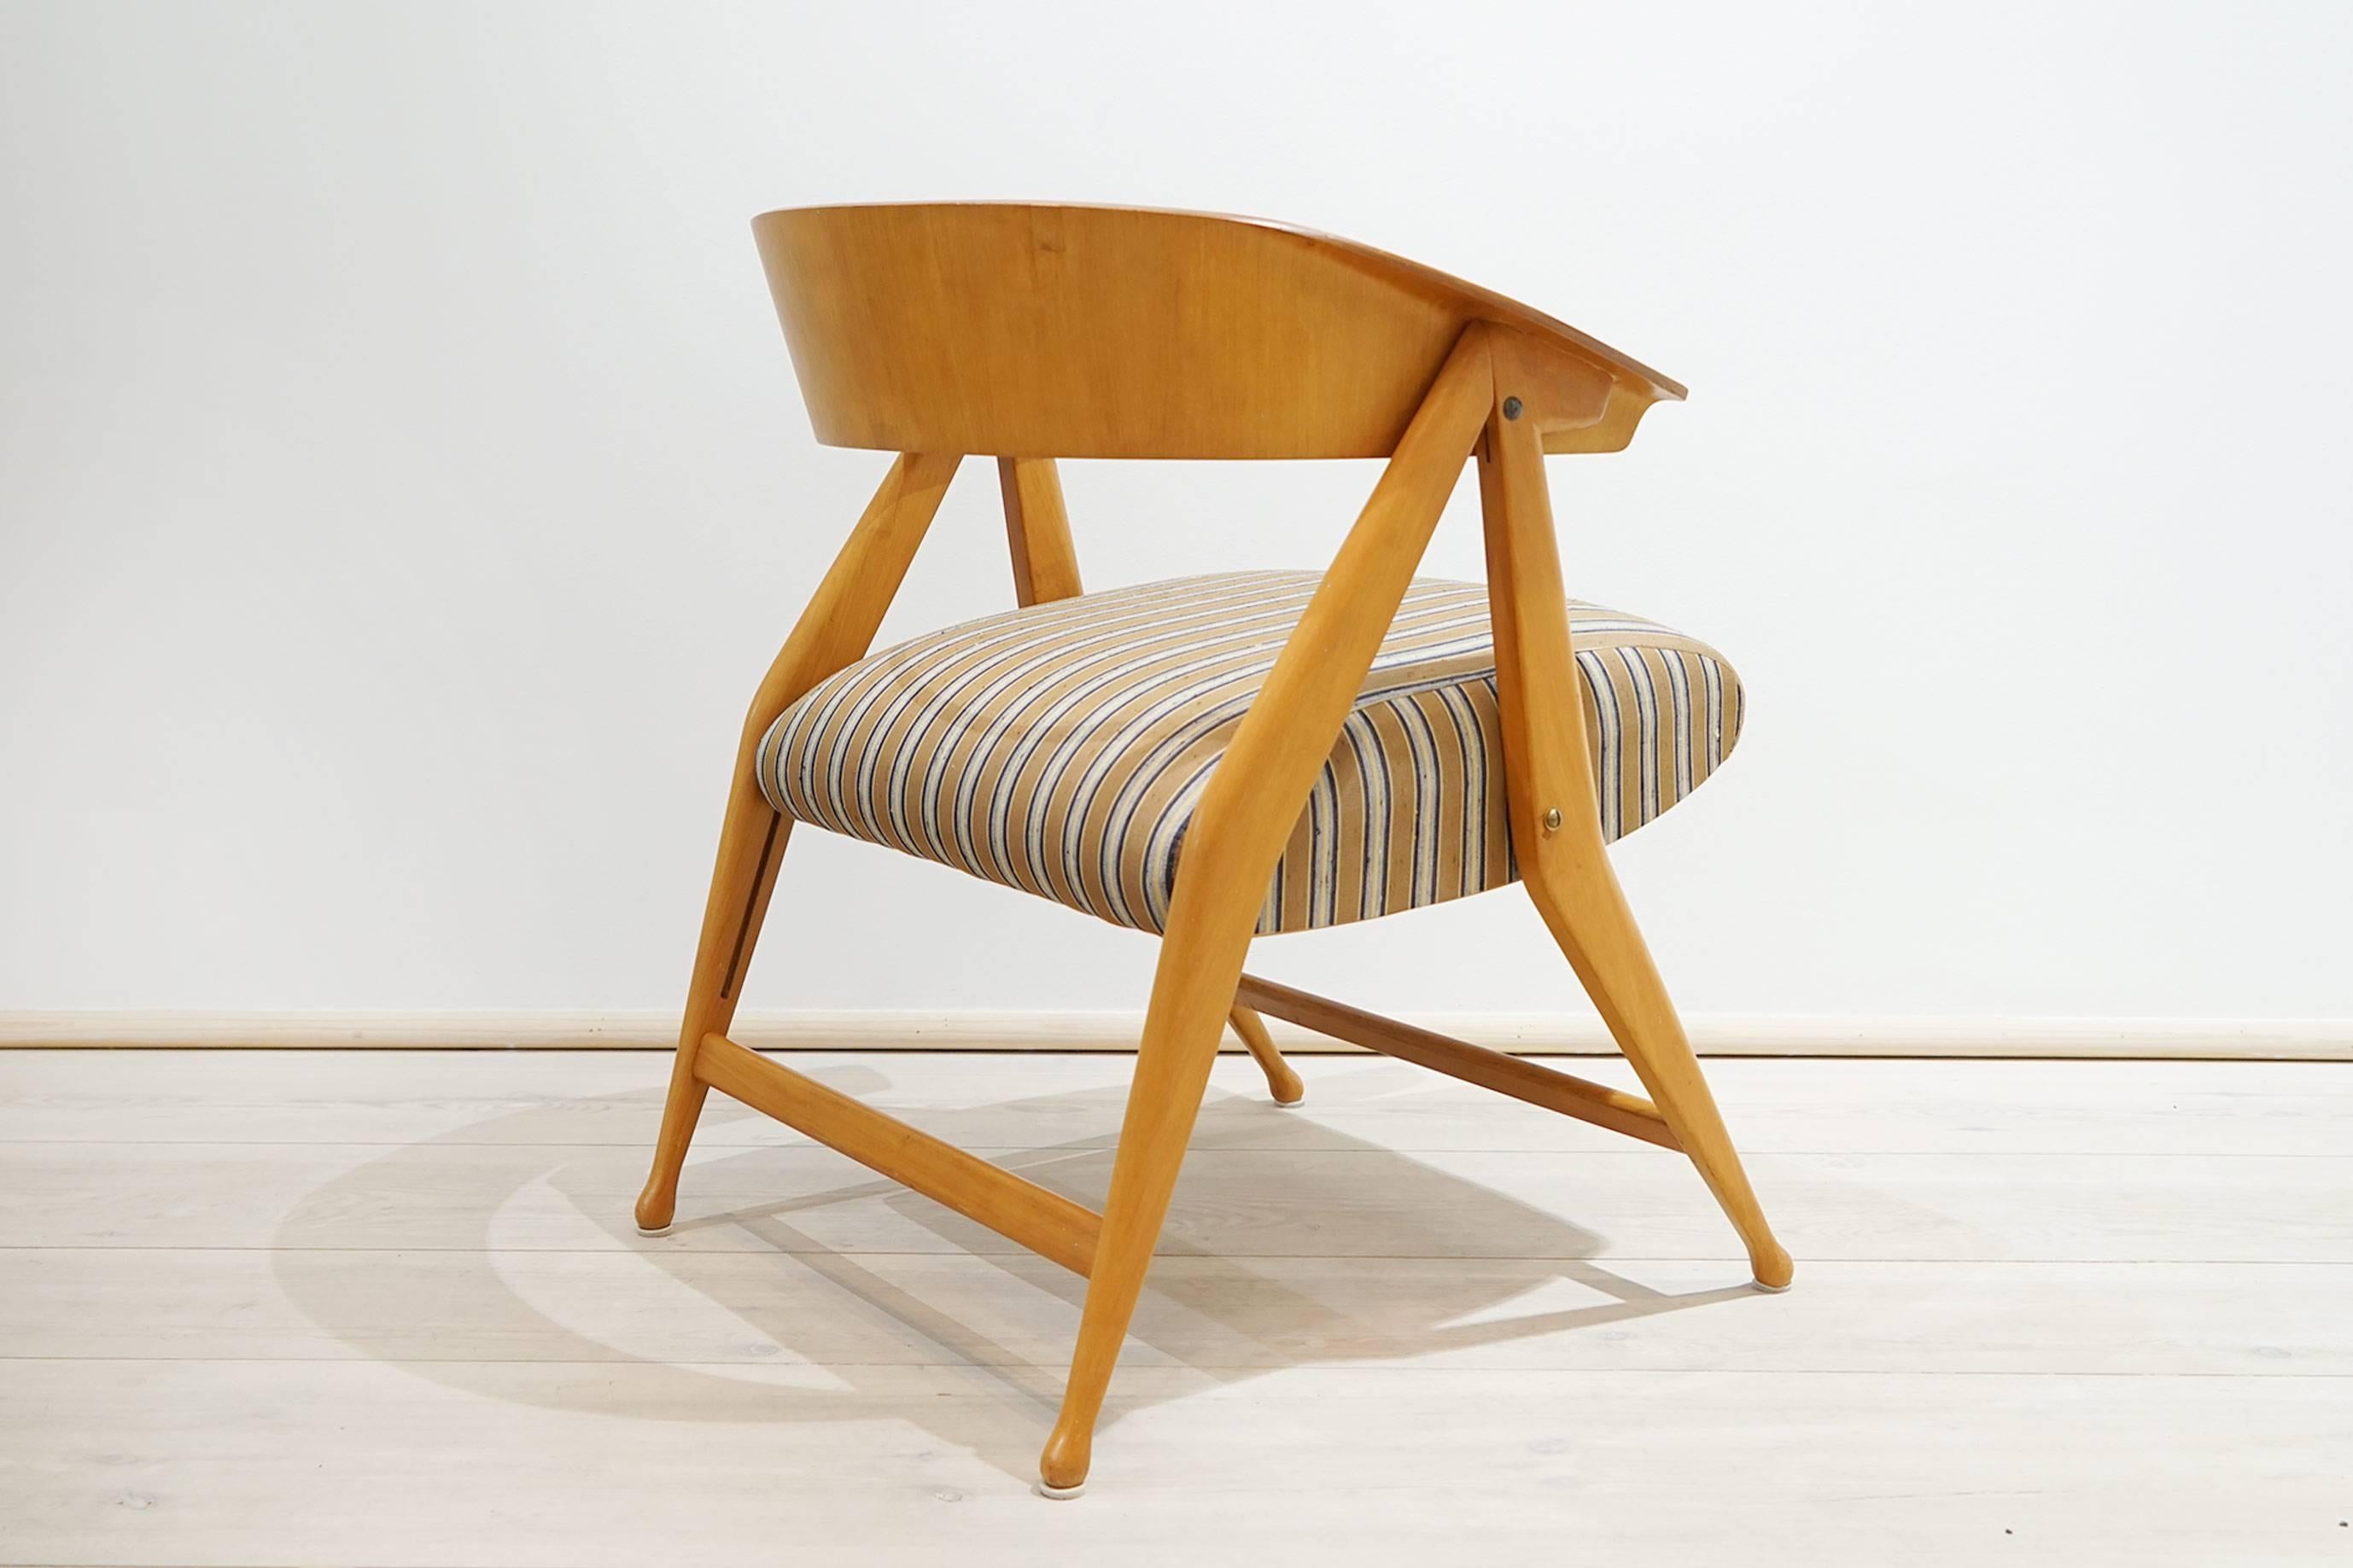 Italian Armchair, Folding Chair by Gio Ponti, Cassina, Italy, 1954-1955